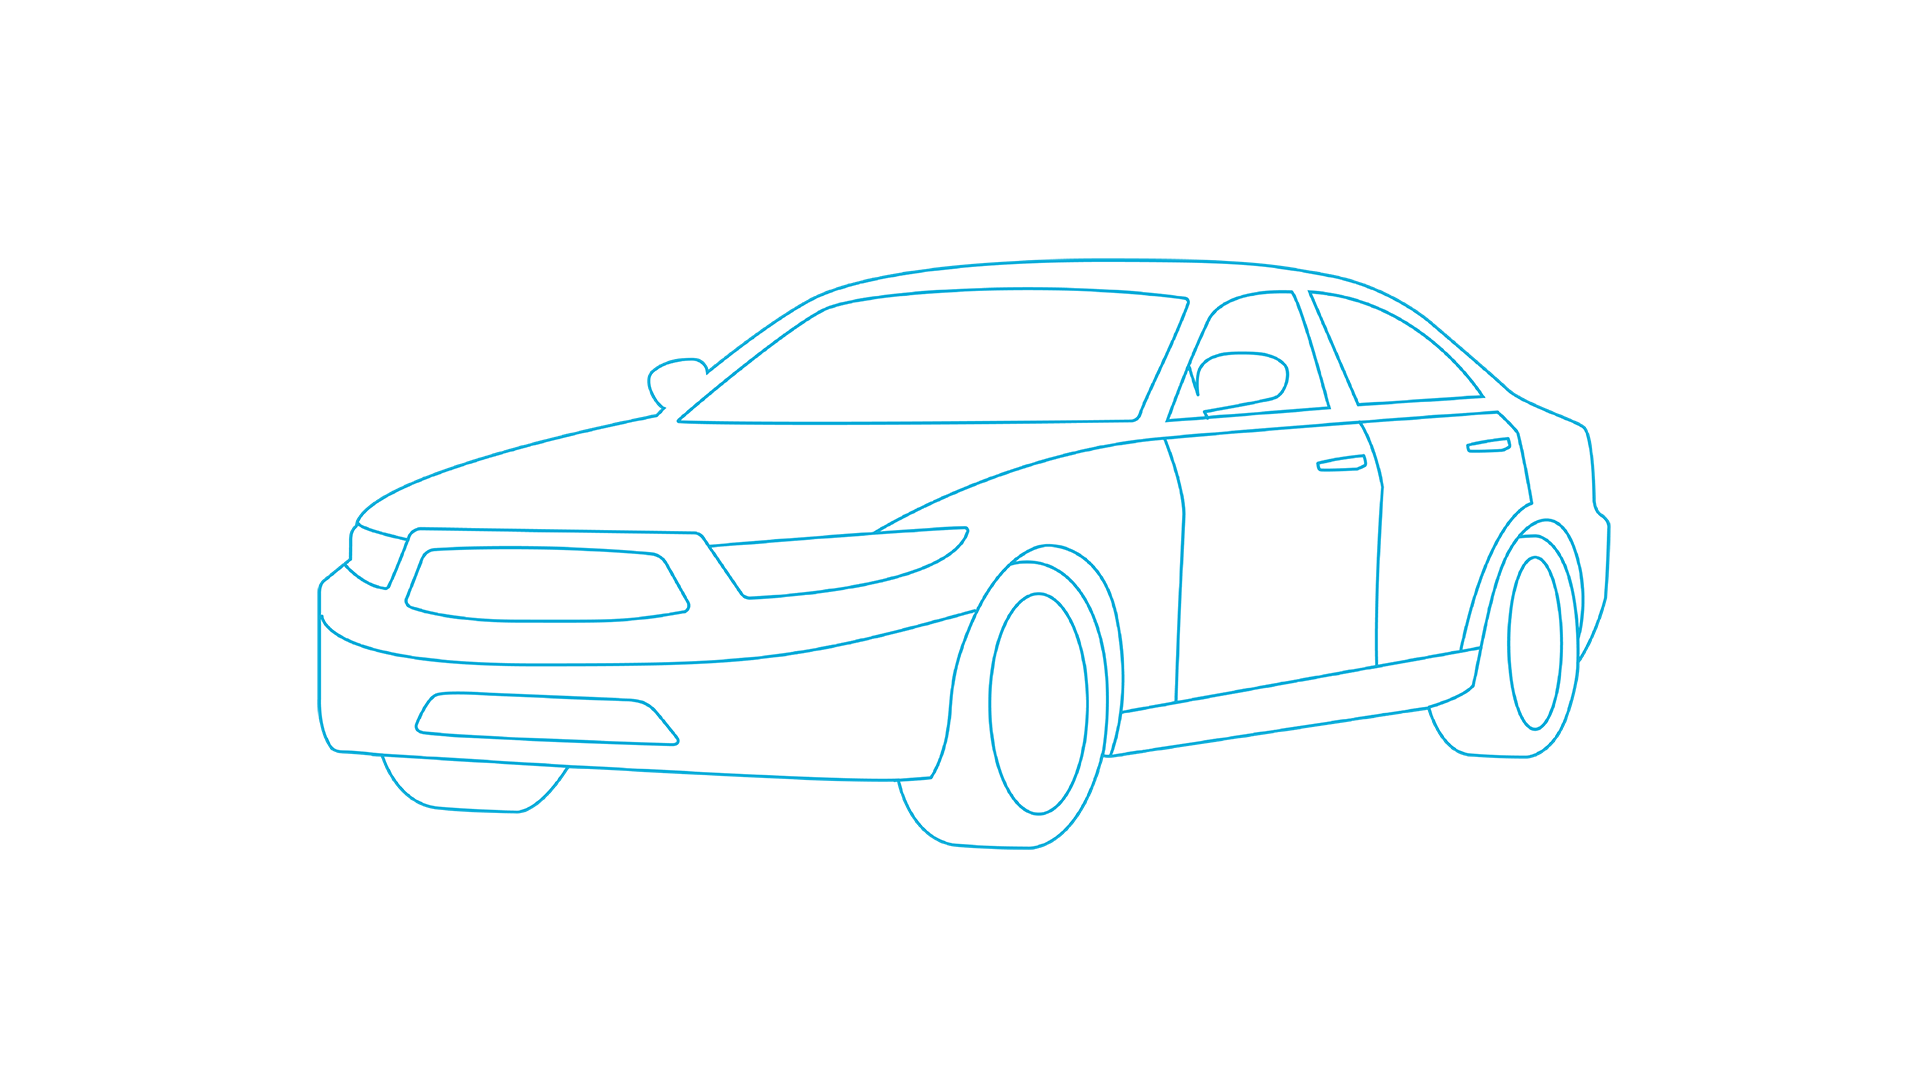 Audi e-tron S model image.